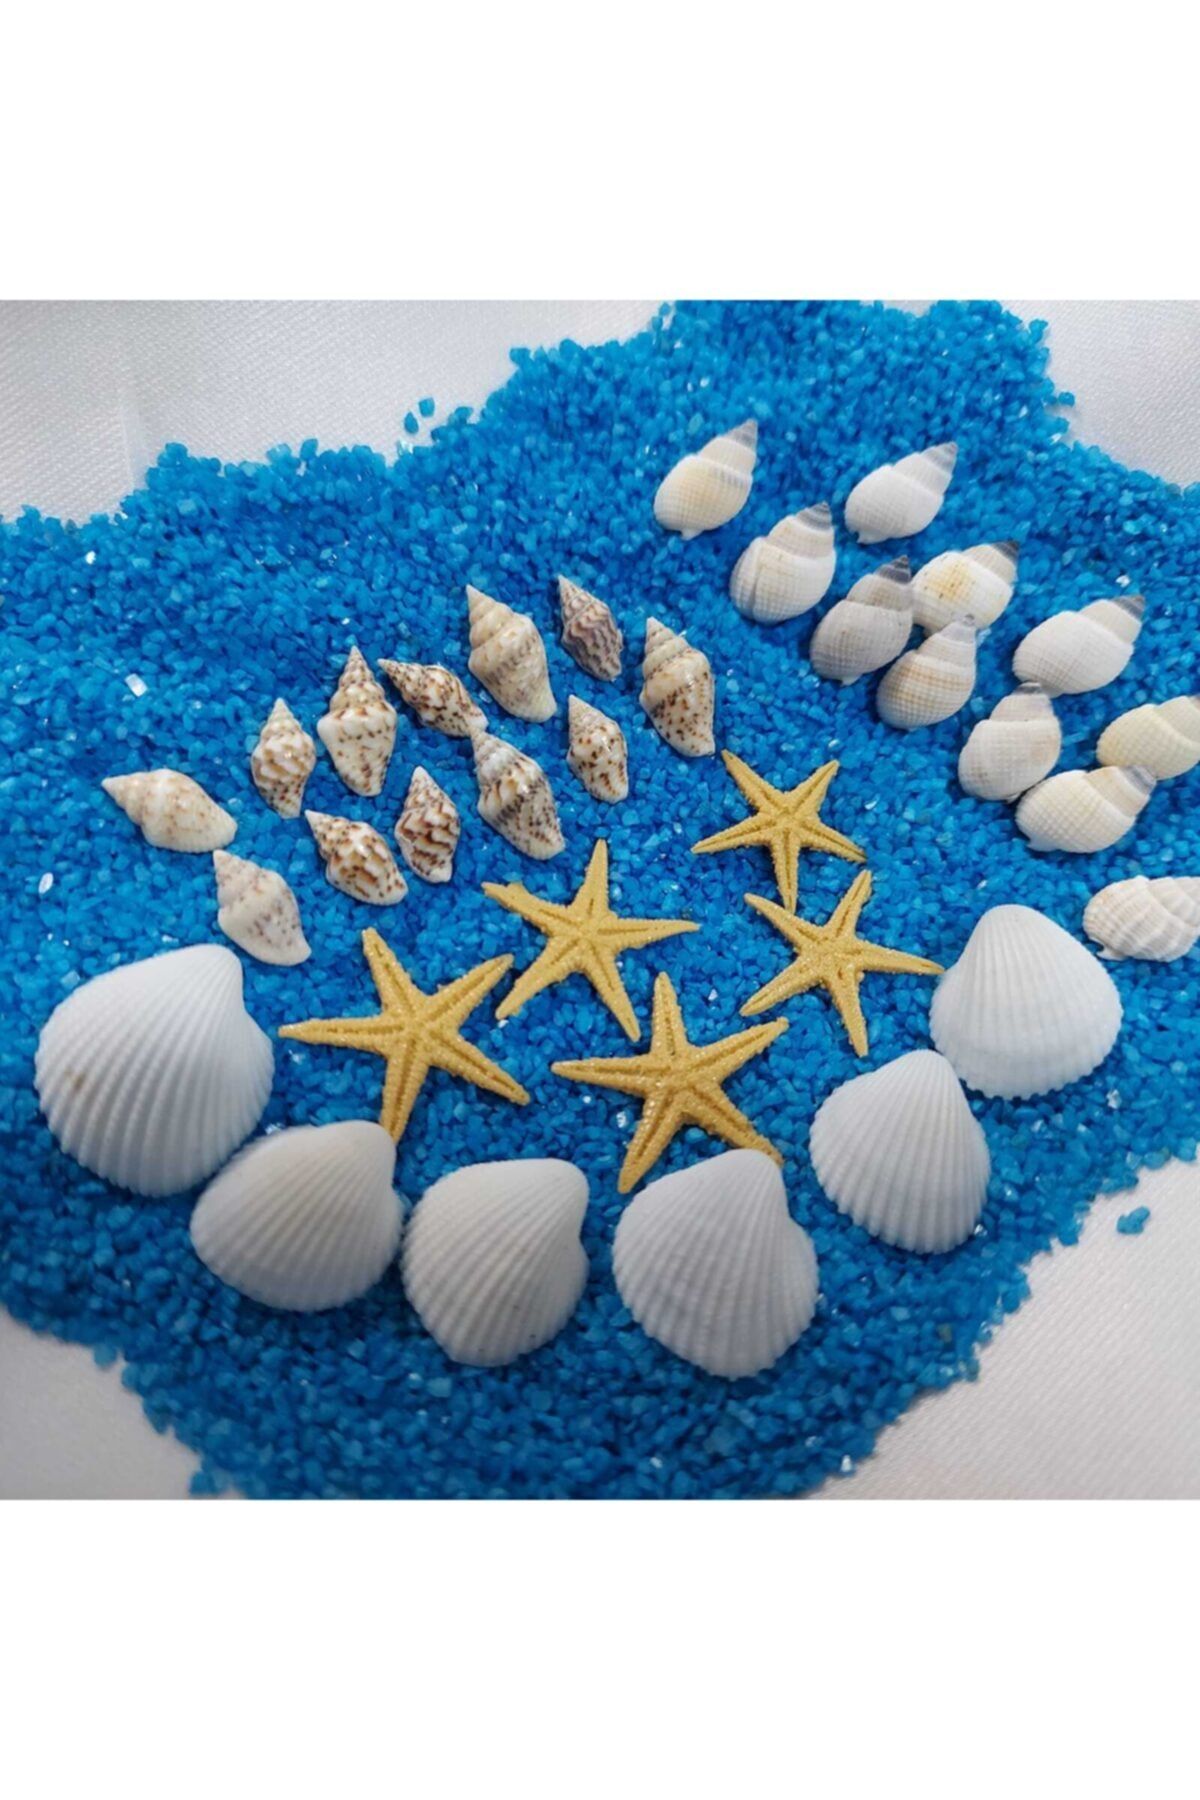 Aker Hediyelik Karışık 3 Çeşit Deniz Kabuğu 50gr Deniz Kabukları Silis Kabuk + 50gr Teraryum Mavi Kum+yıldız